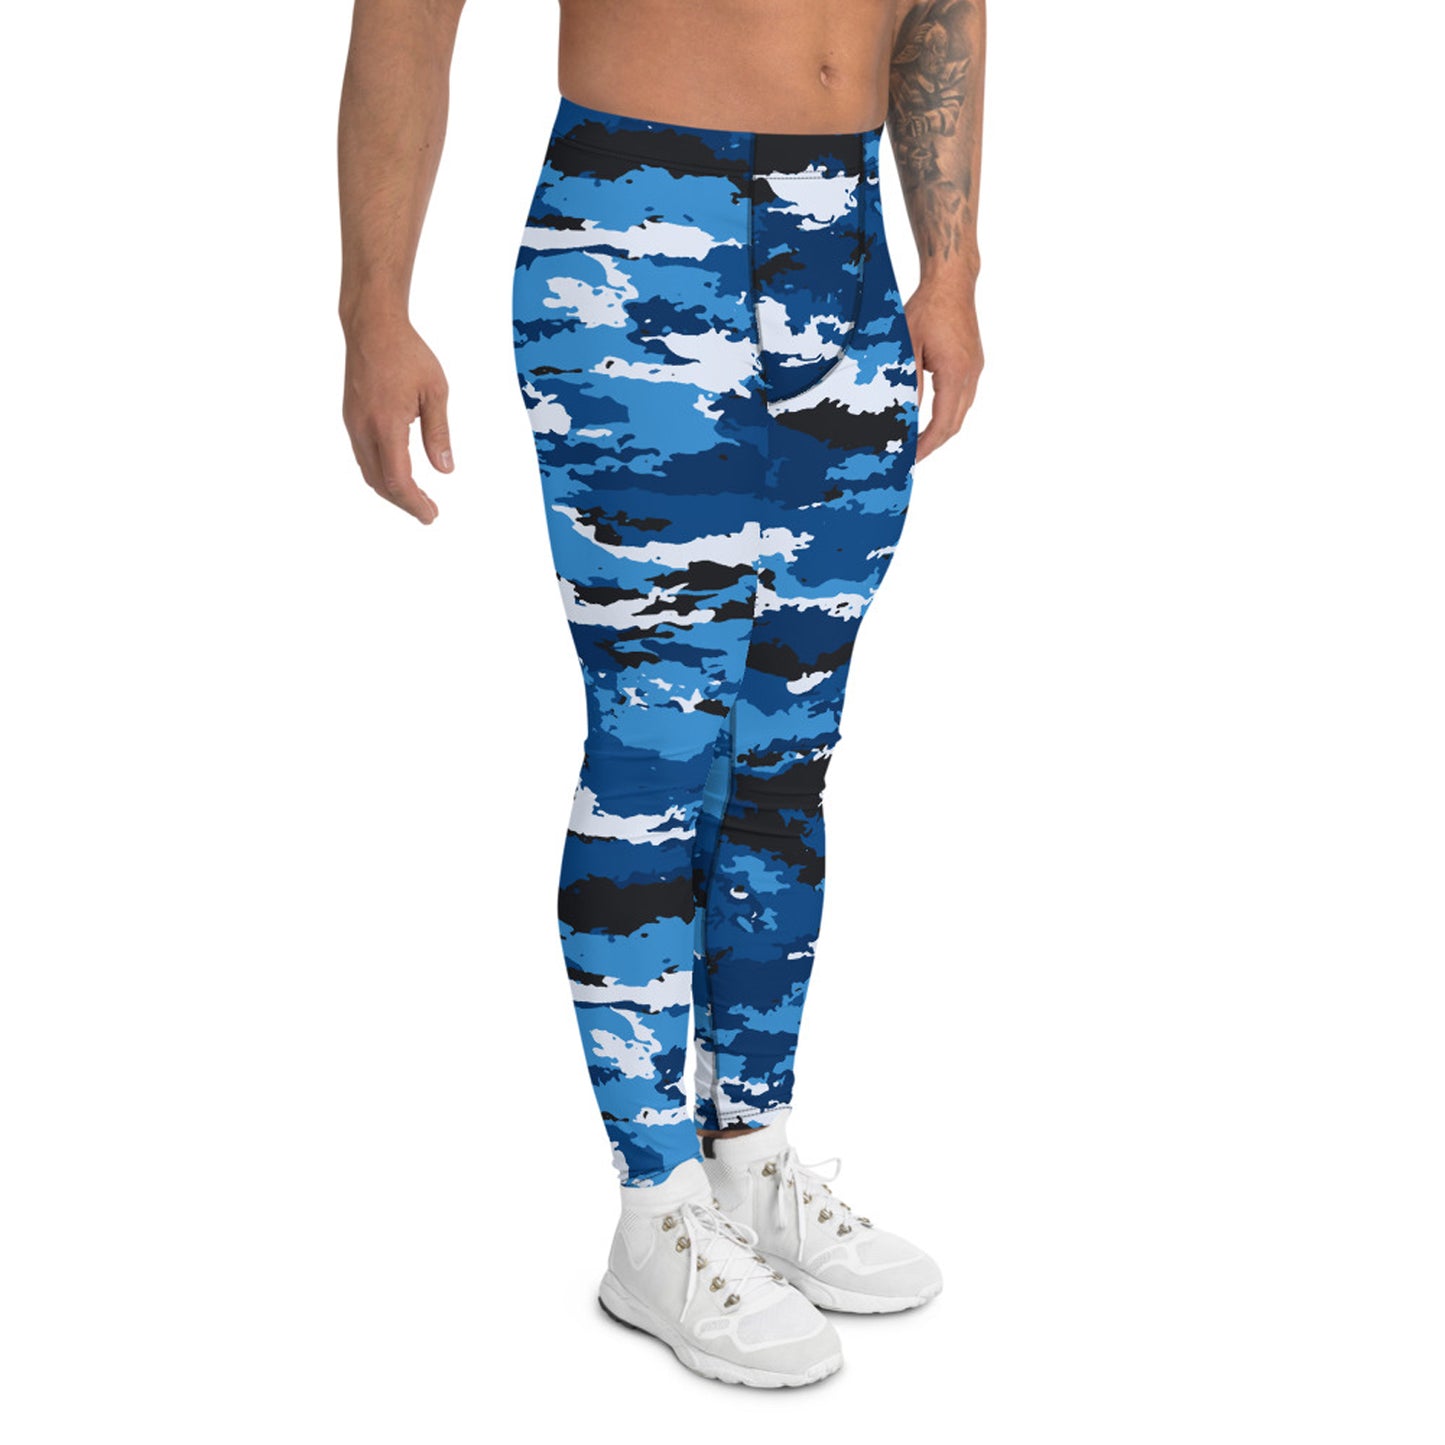 Blue Camo Yoga Pants for Men